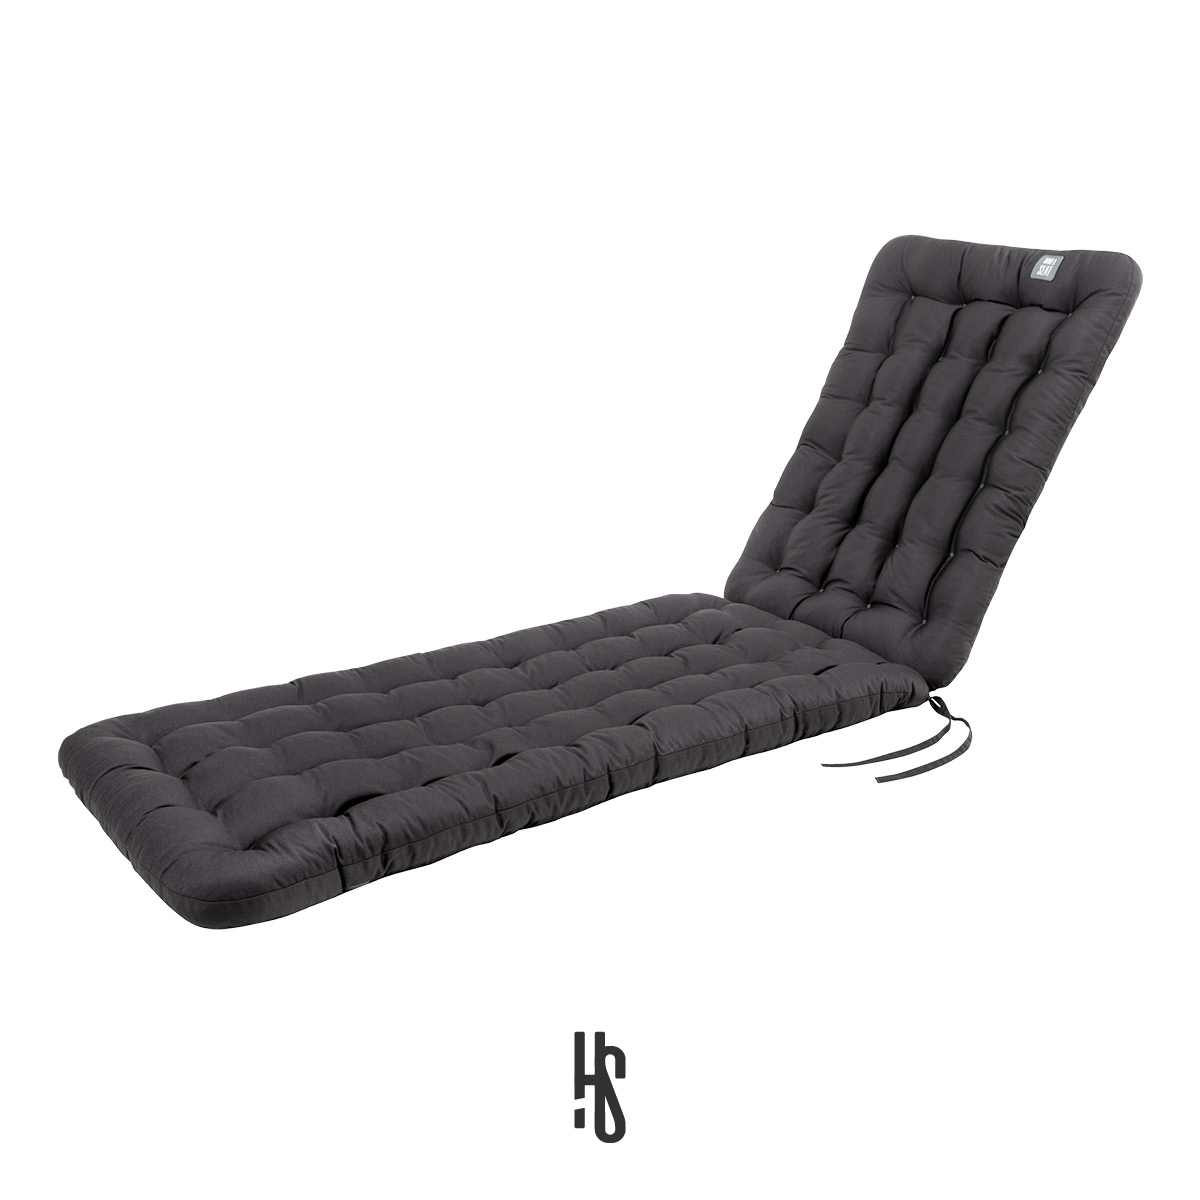 Auflage für Deckchair / Liegestuhl / Relaxsessel Grau mit Premium-Sitz-/Liegekomfort inkl. orthopädisches Outdoor Nackenkissen | HAVE A SEAT Living